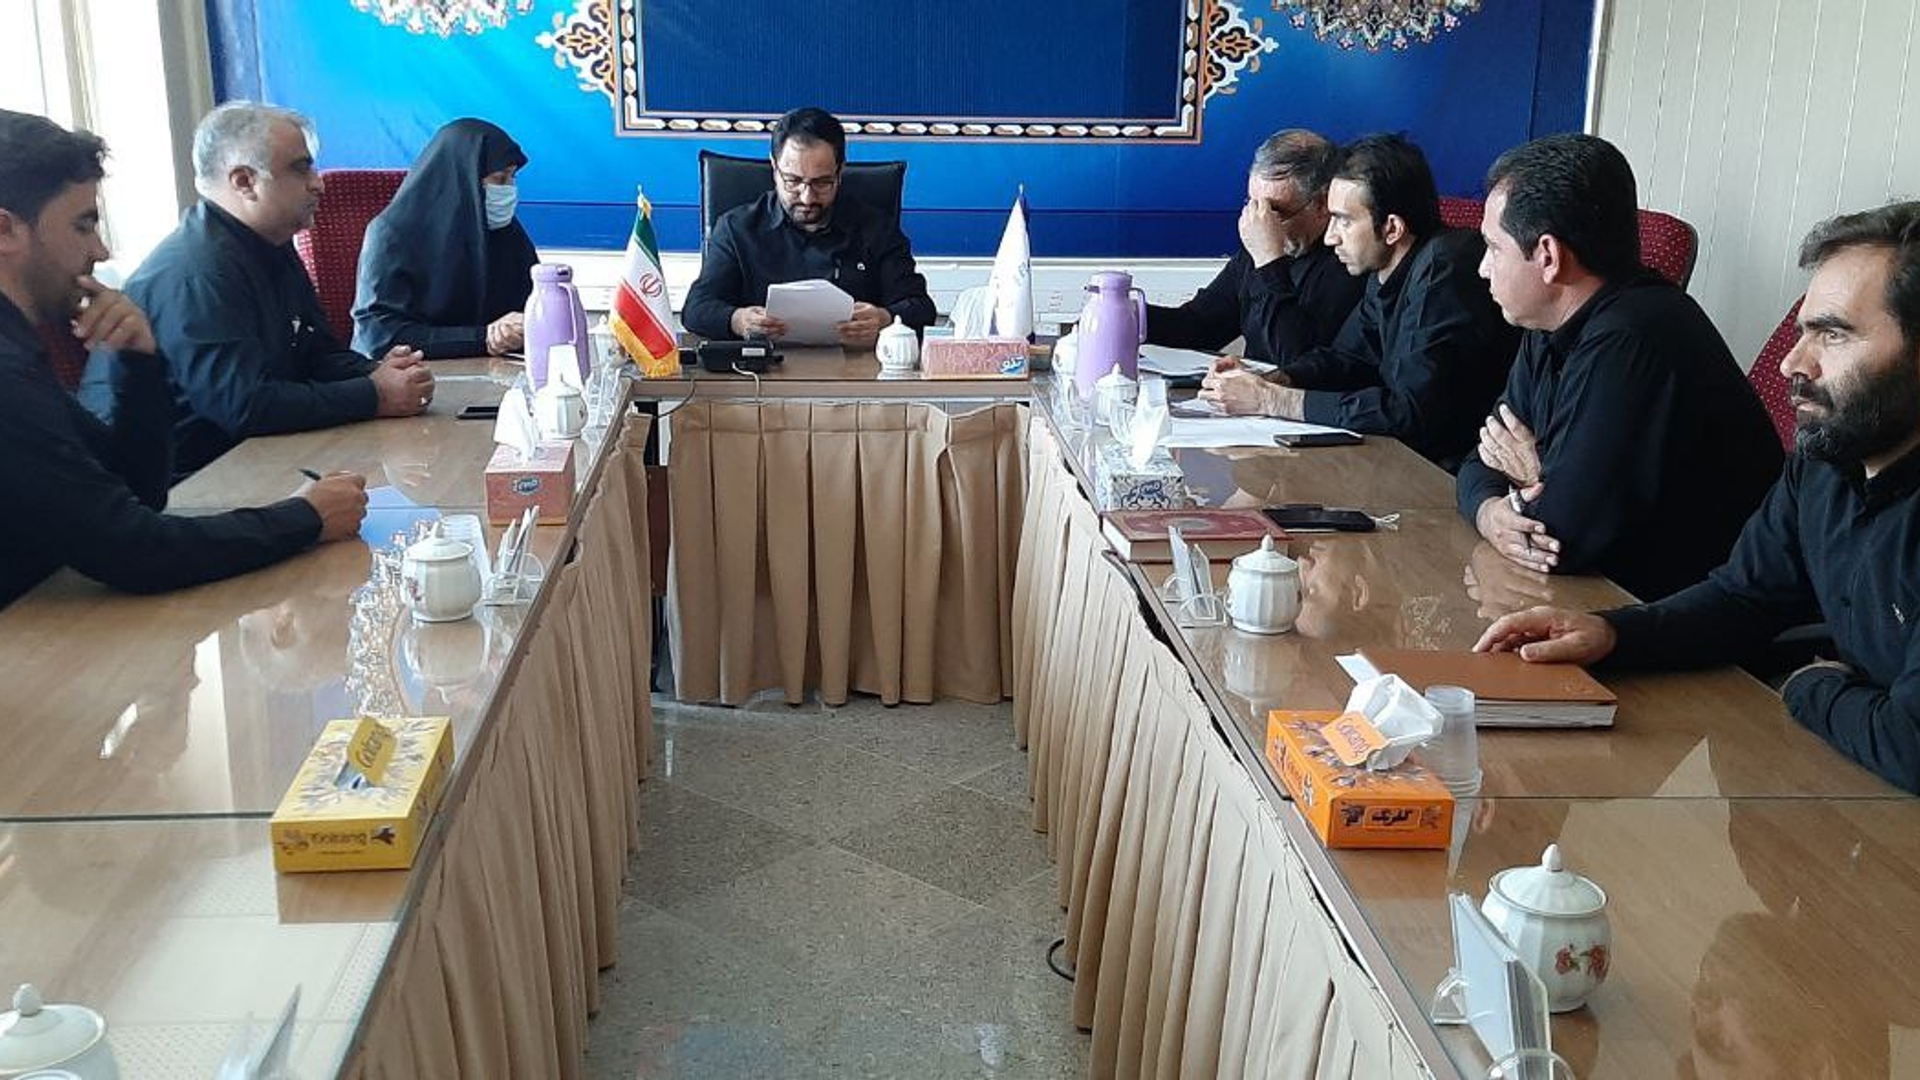 جلسه هیئت تطبیق مصوبات شوراهای اسلامی شهرهای کمیجان و میلاجرد